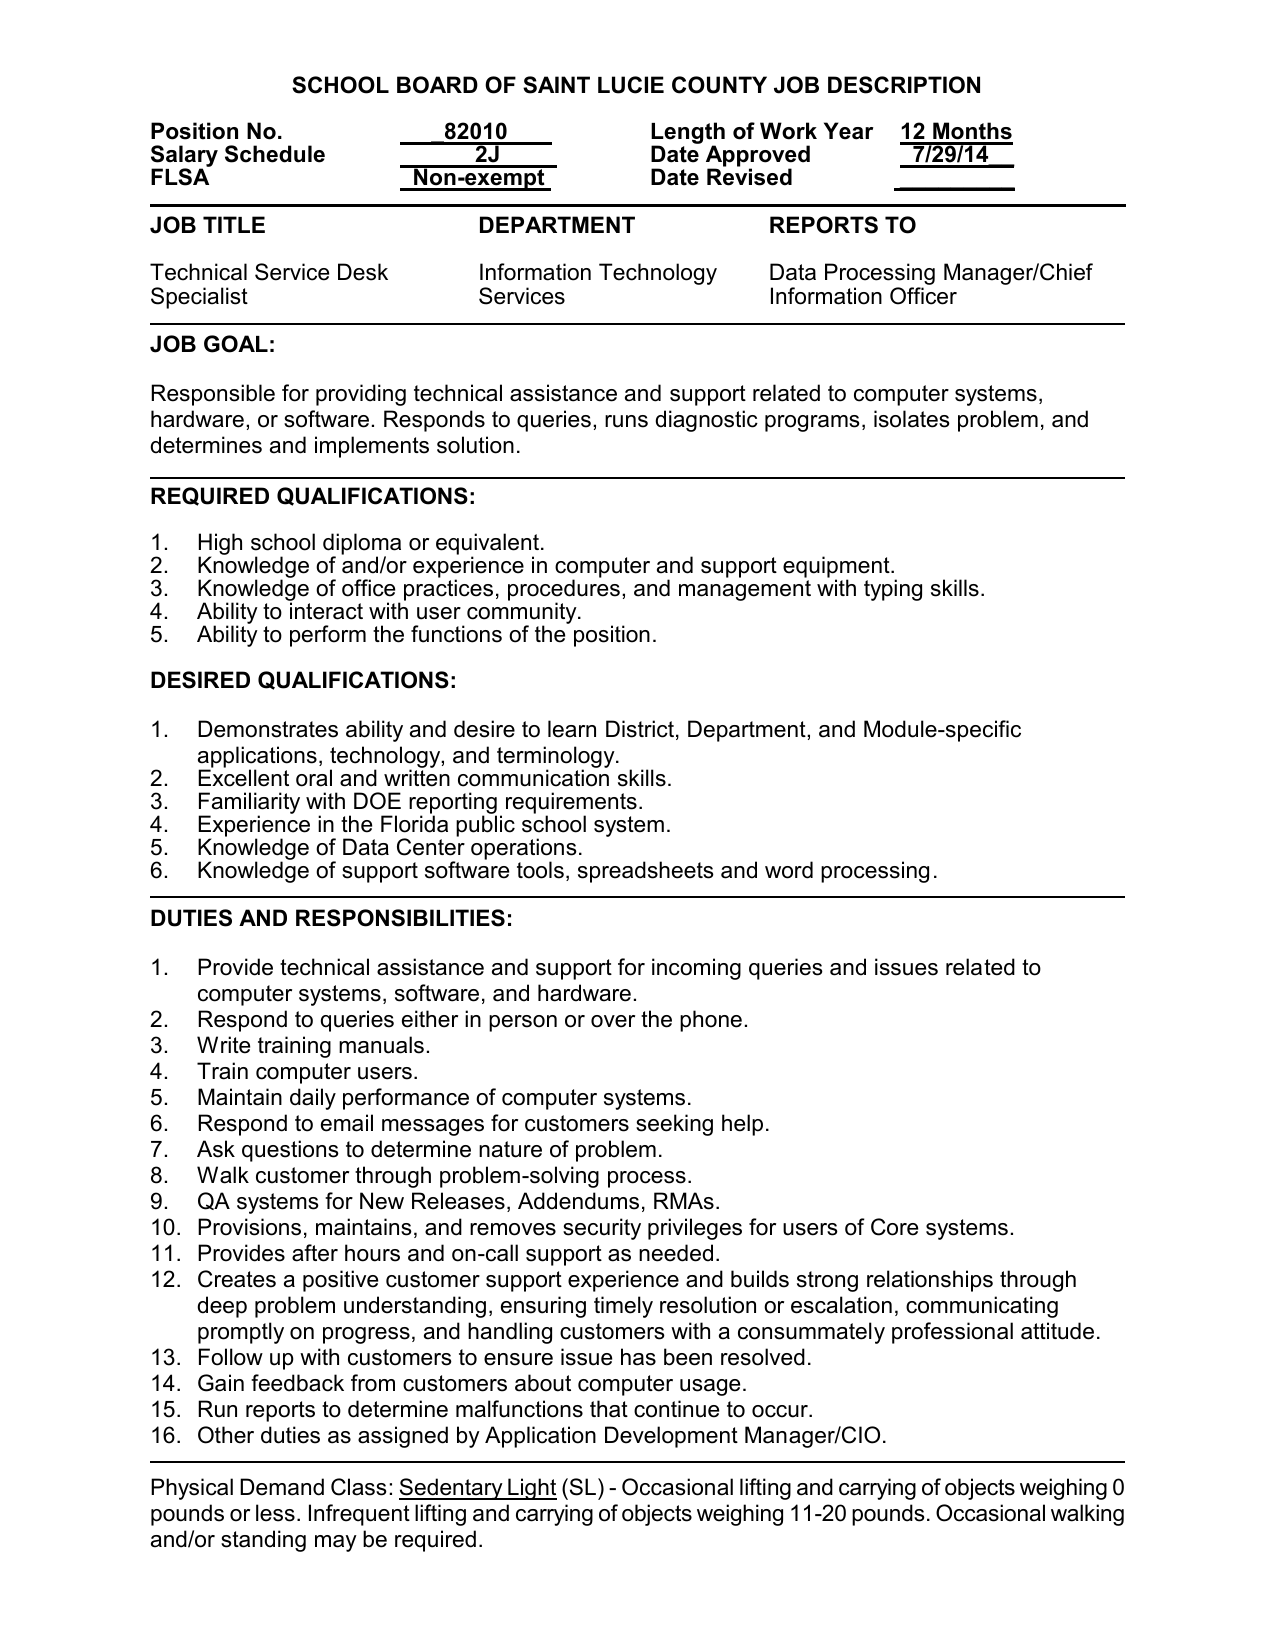 School Board Of Saint Lucie County Job Description Position No 82010